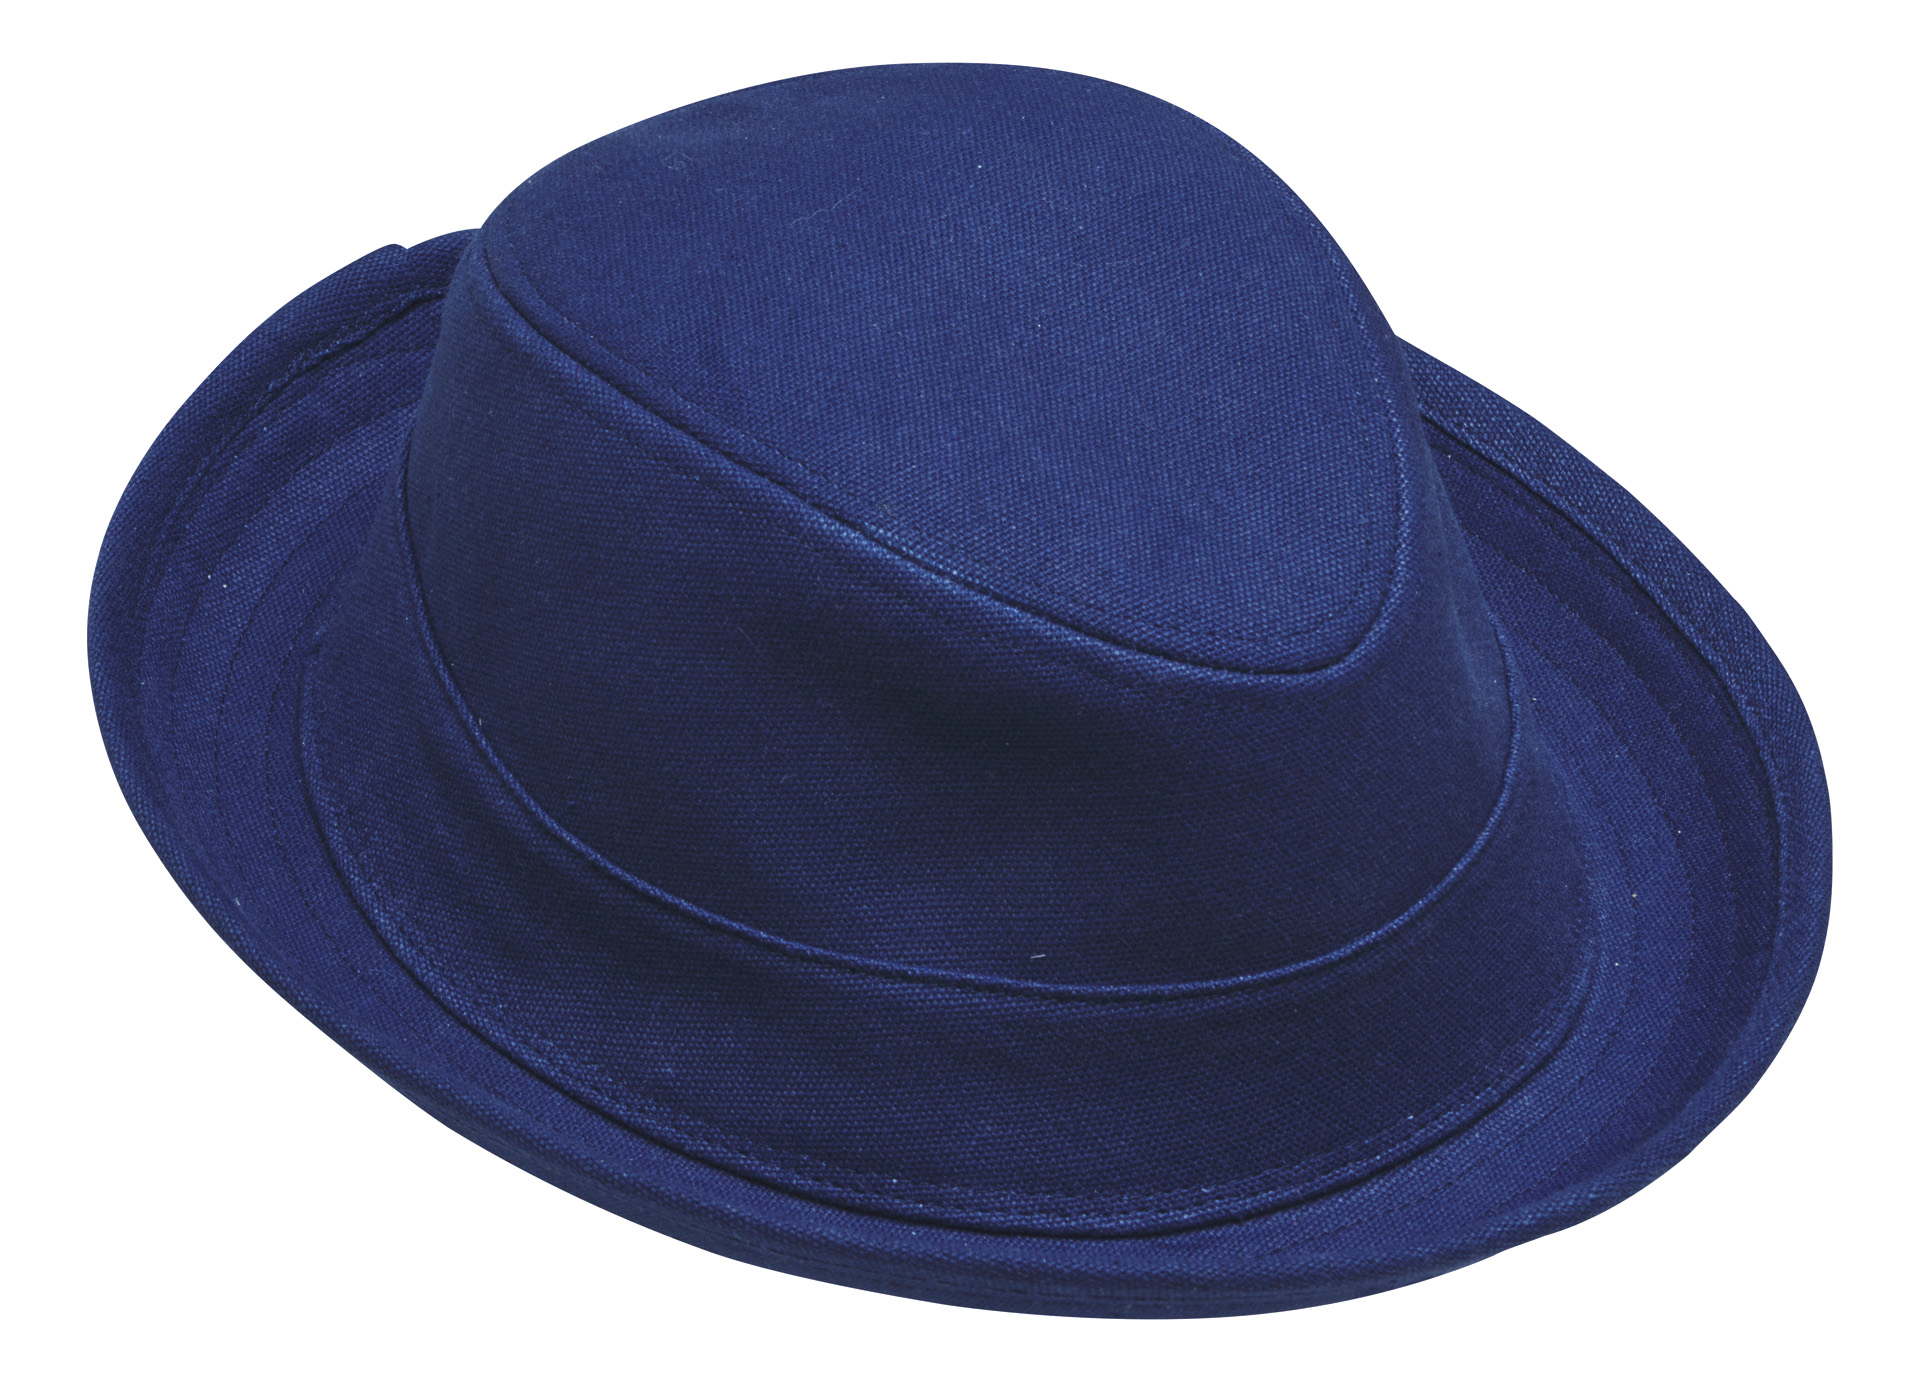 Heritage hat